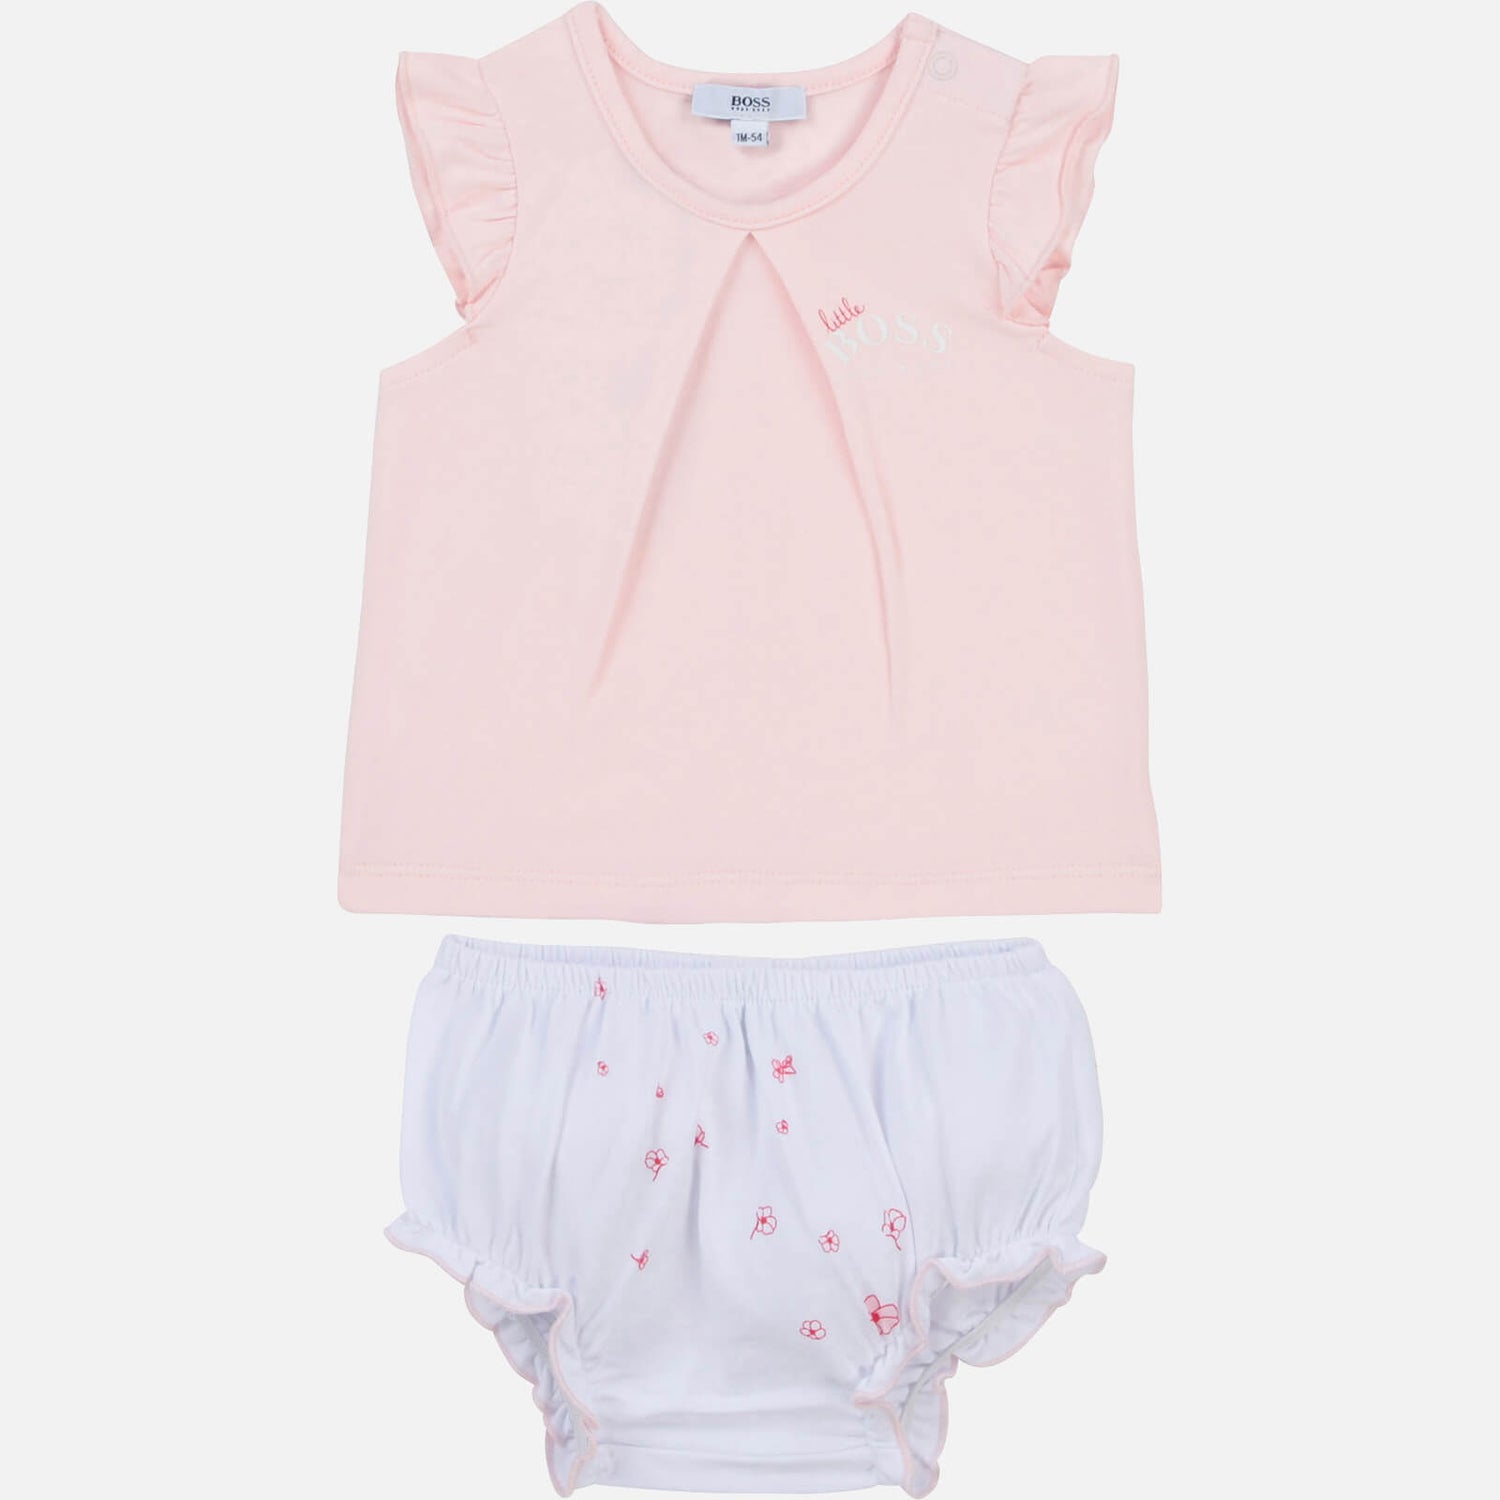 Hugo Boss Baby Girls' T-Shirt & Bloomers Set - White